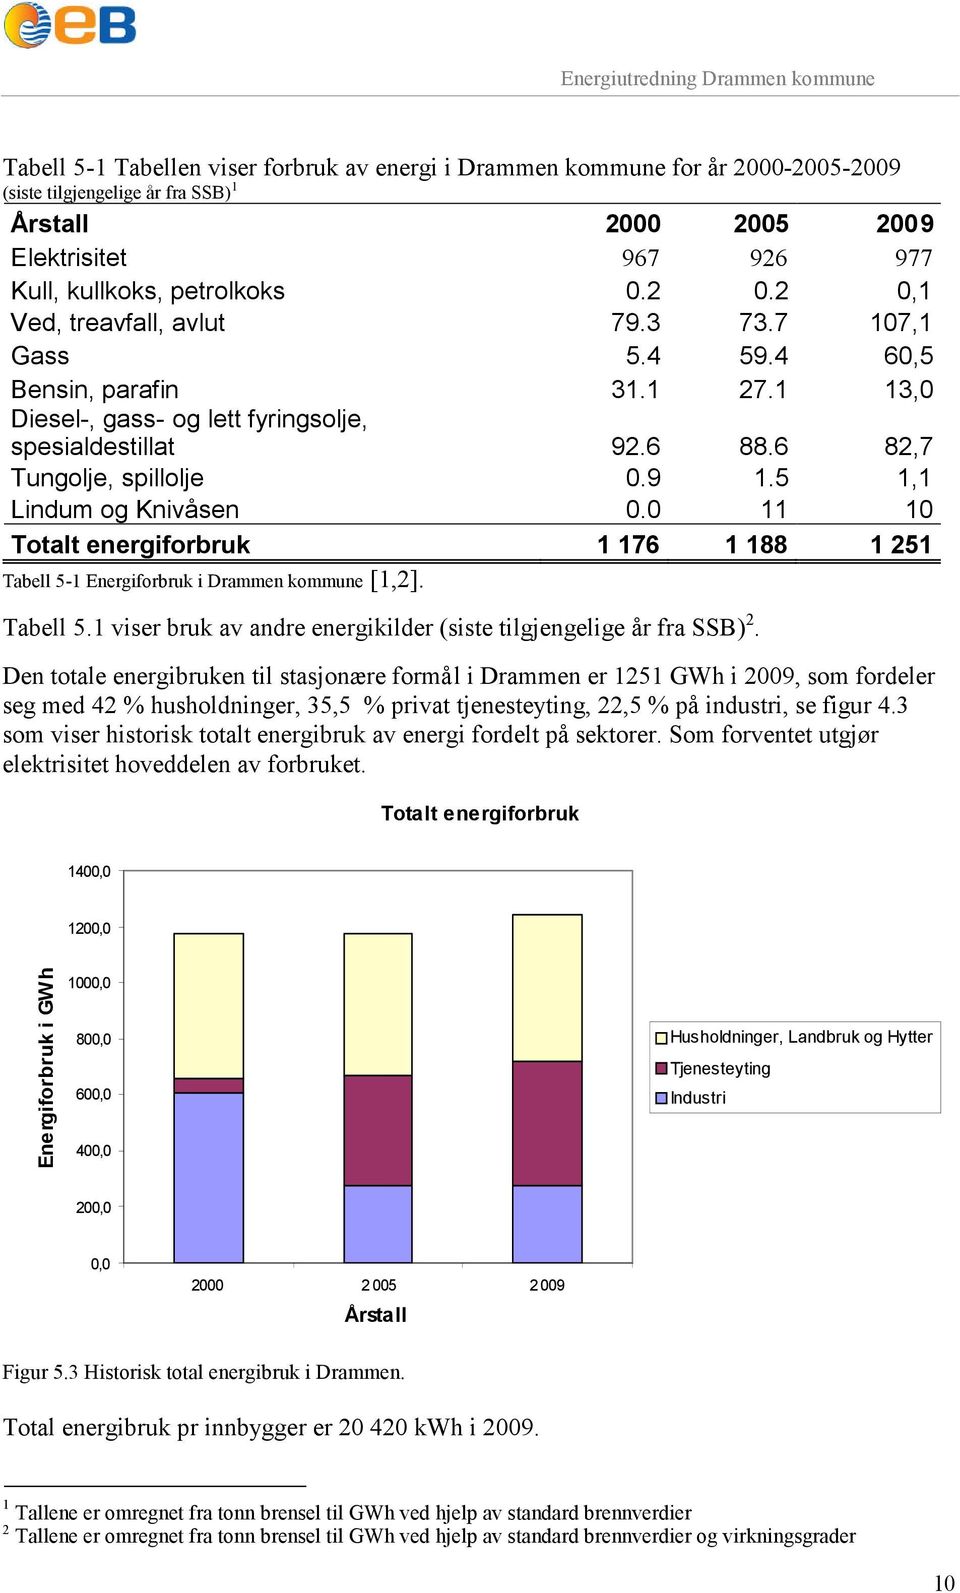 5 1,1 Lindum og Knivåsen 0.0 11 10 Totalt energiforbruk 1 176 1 188 1 251 Tabell 5-1 Energiforbruk i Drammen kommune [1,2]. Tabell 5.1 viser bruk av andre energikilder (siste tilgjengelige år fra SSB) 2.